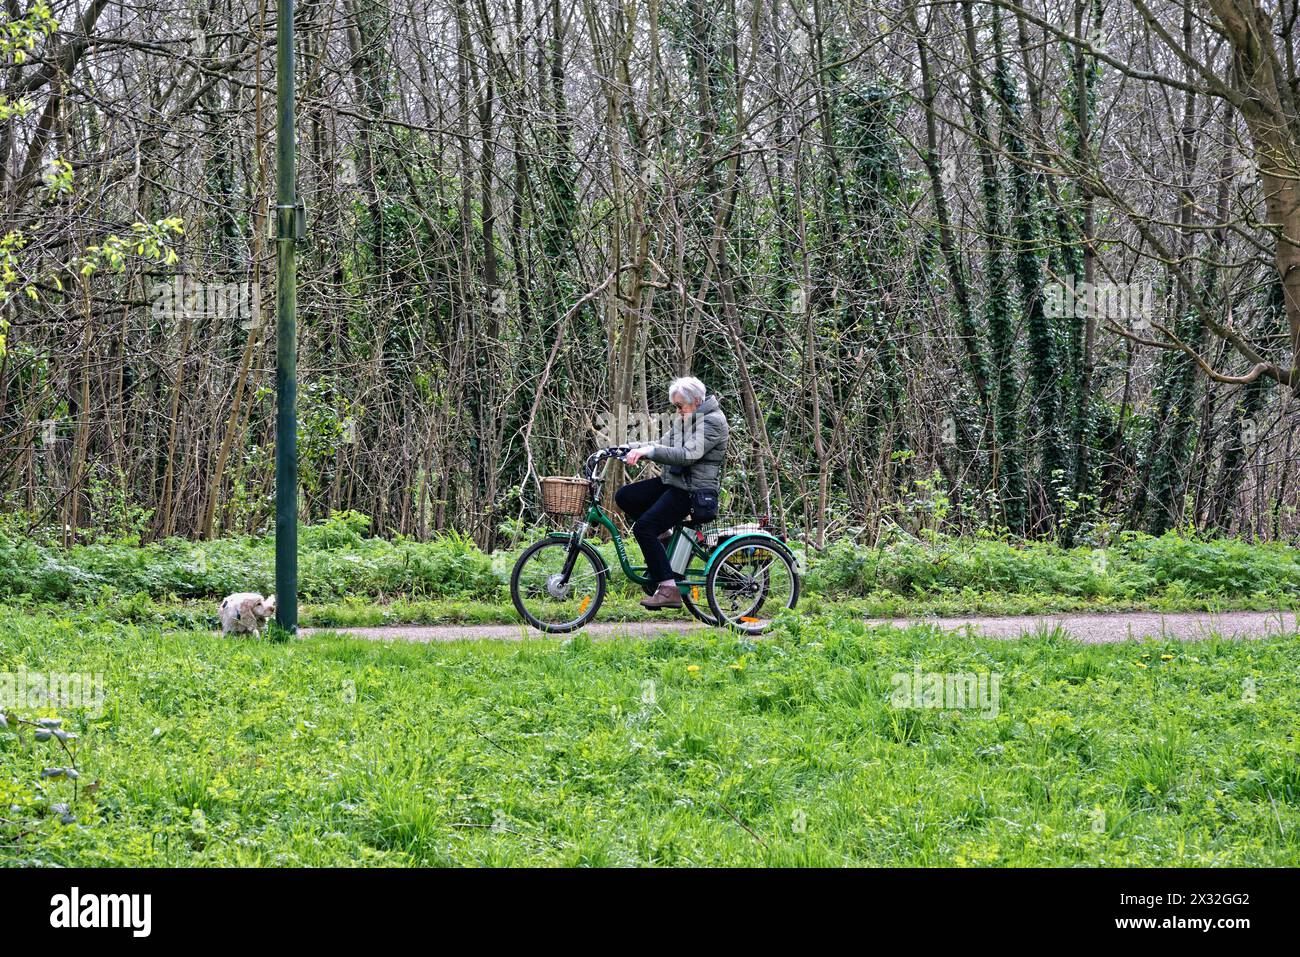 Une dame âgée chevauchant un tricycle électrique Jorvik dans un parc à Teddington Greater London Angleterre Banque D'Images